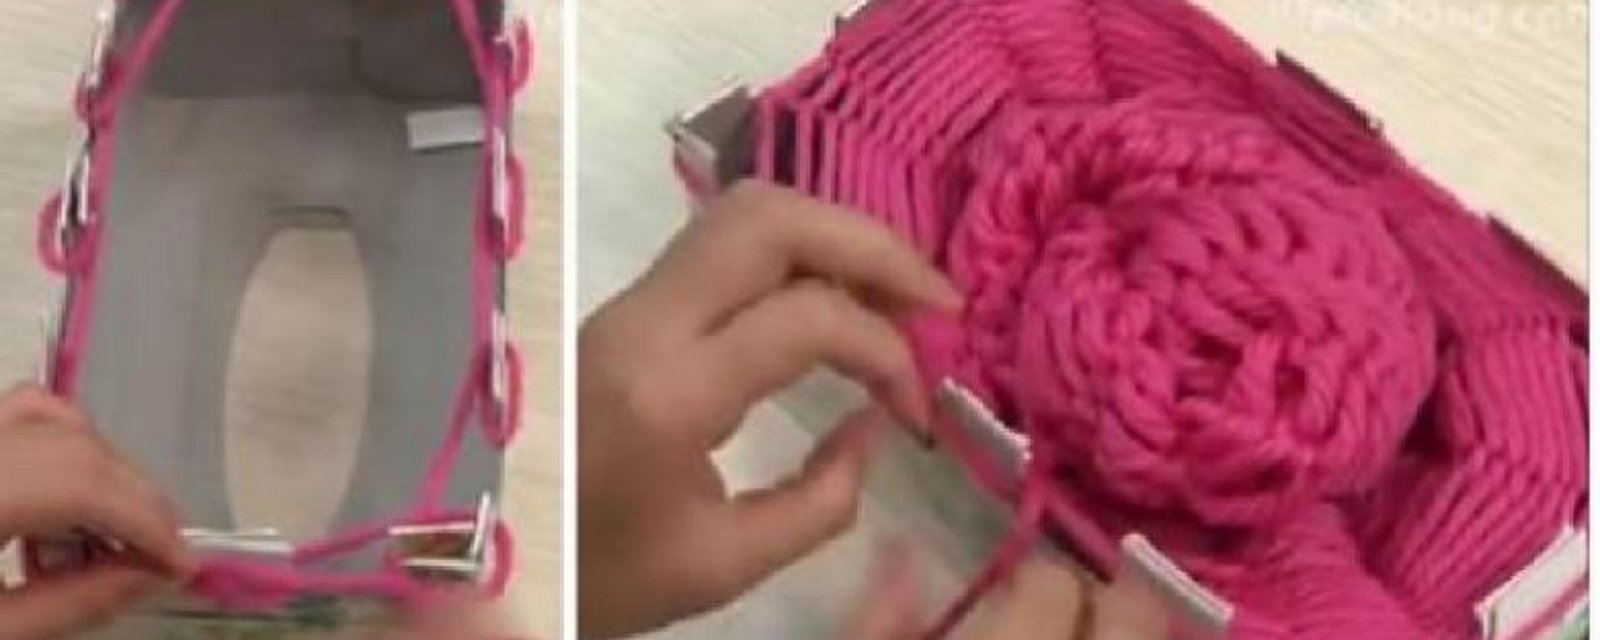 Ce qu'elle fait avec une boîte de mouchoirs changera votre façon de tricoter... C'est magique!